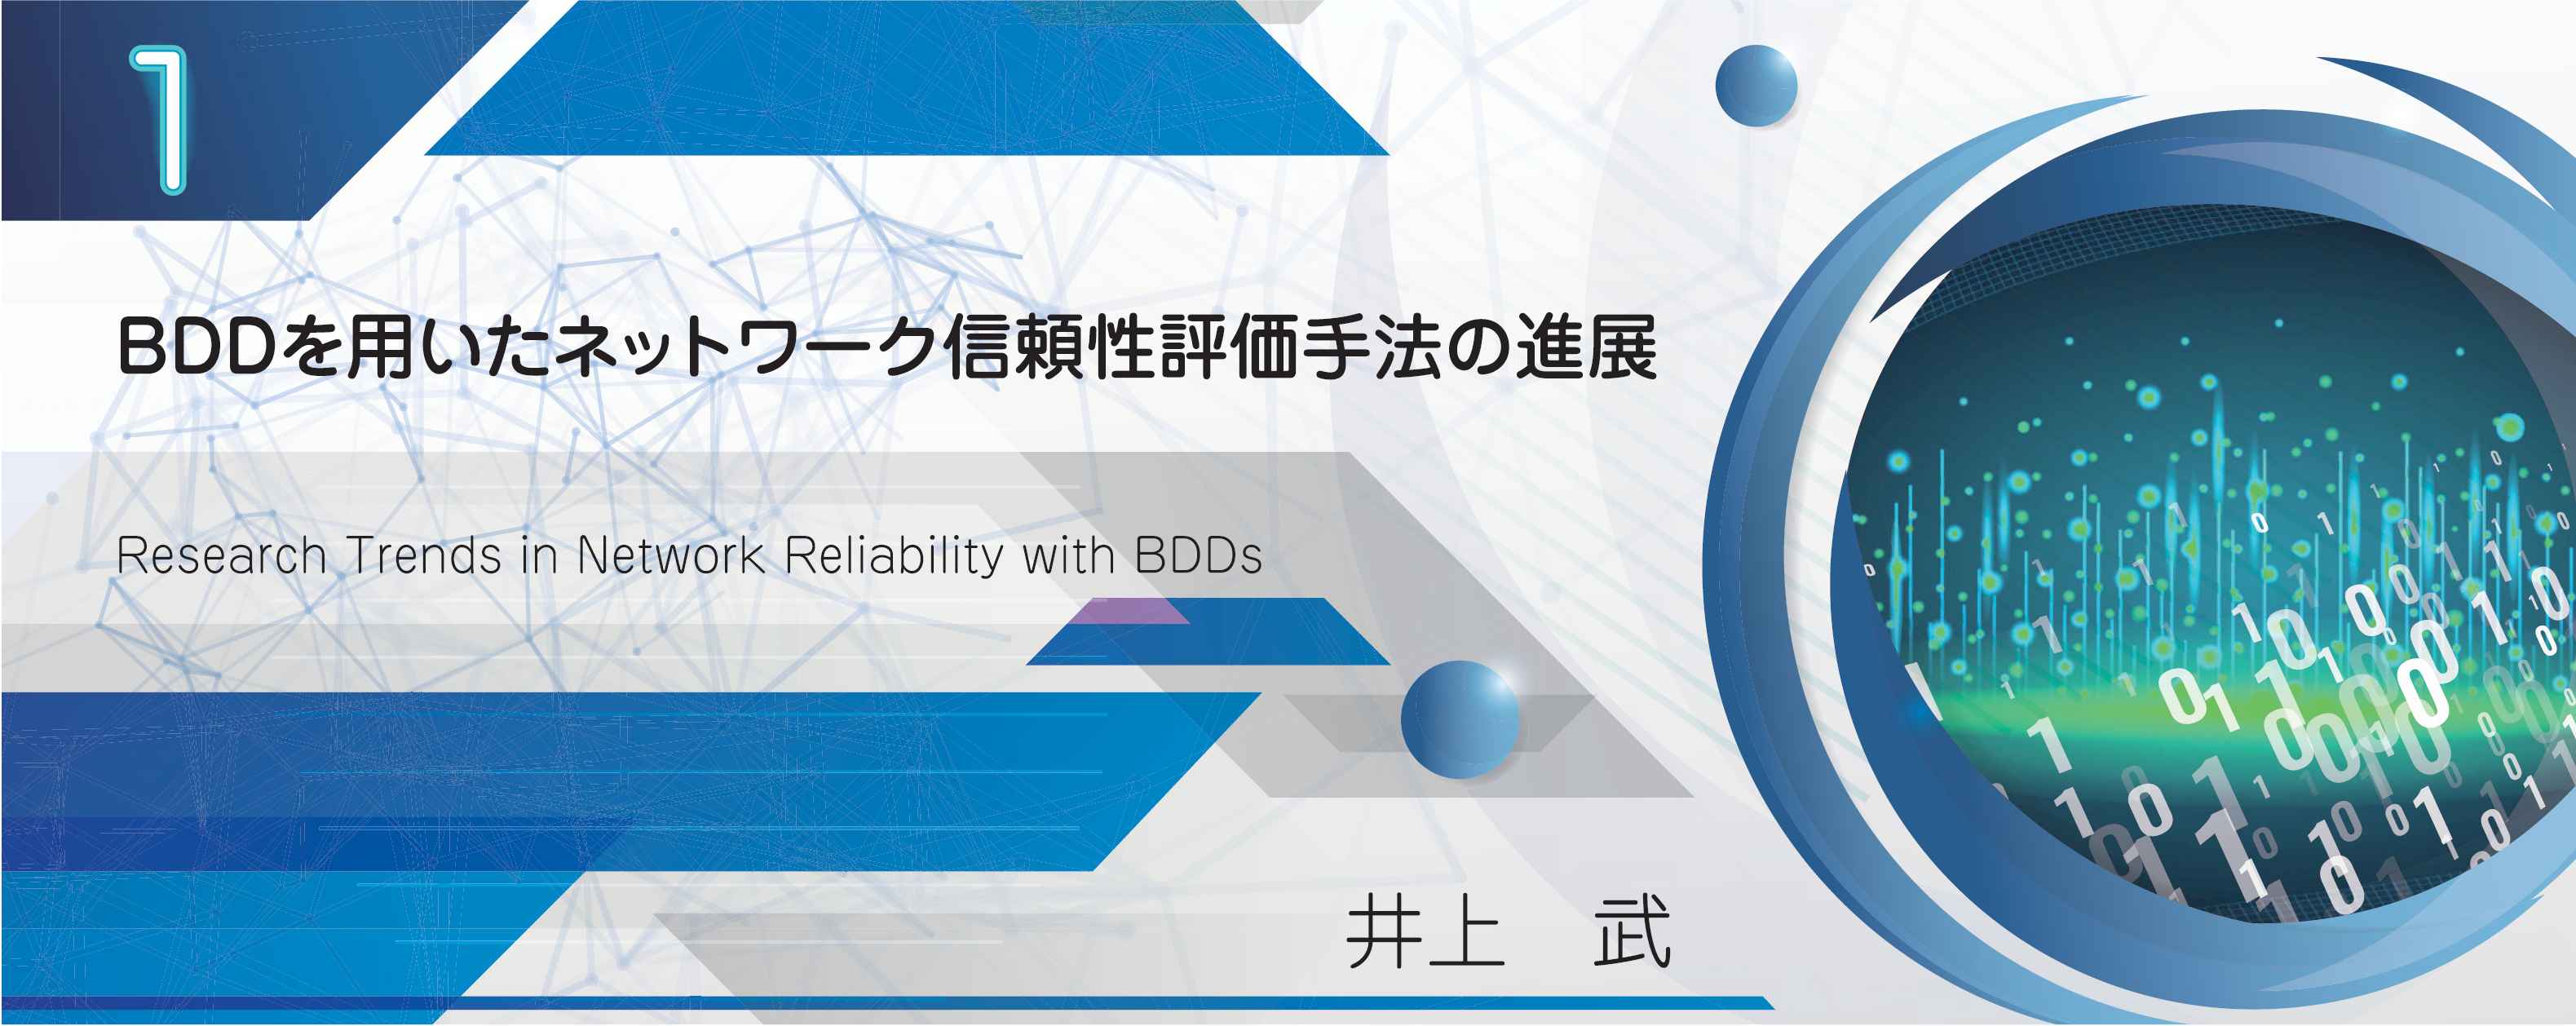 特別小特集 1. BDDを用いたネットワーク信頼性評価手法の進展 Research Trends in Network Reliability with BDDs 井上　武